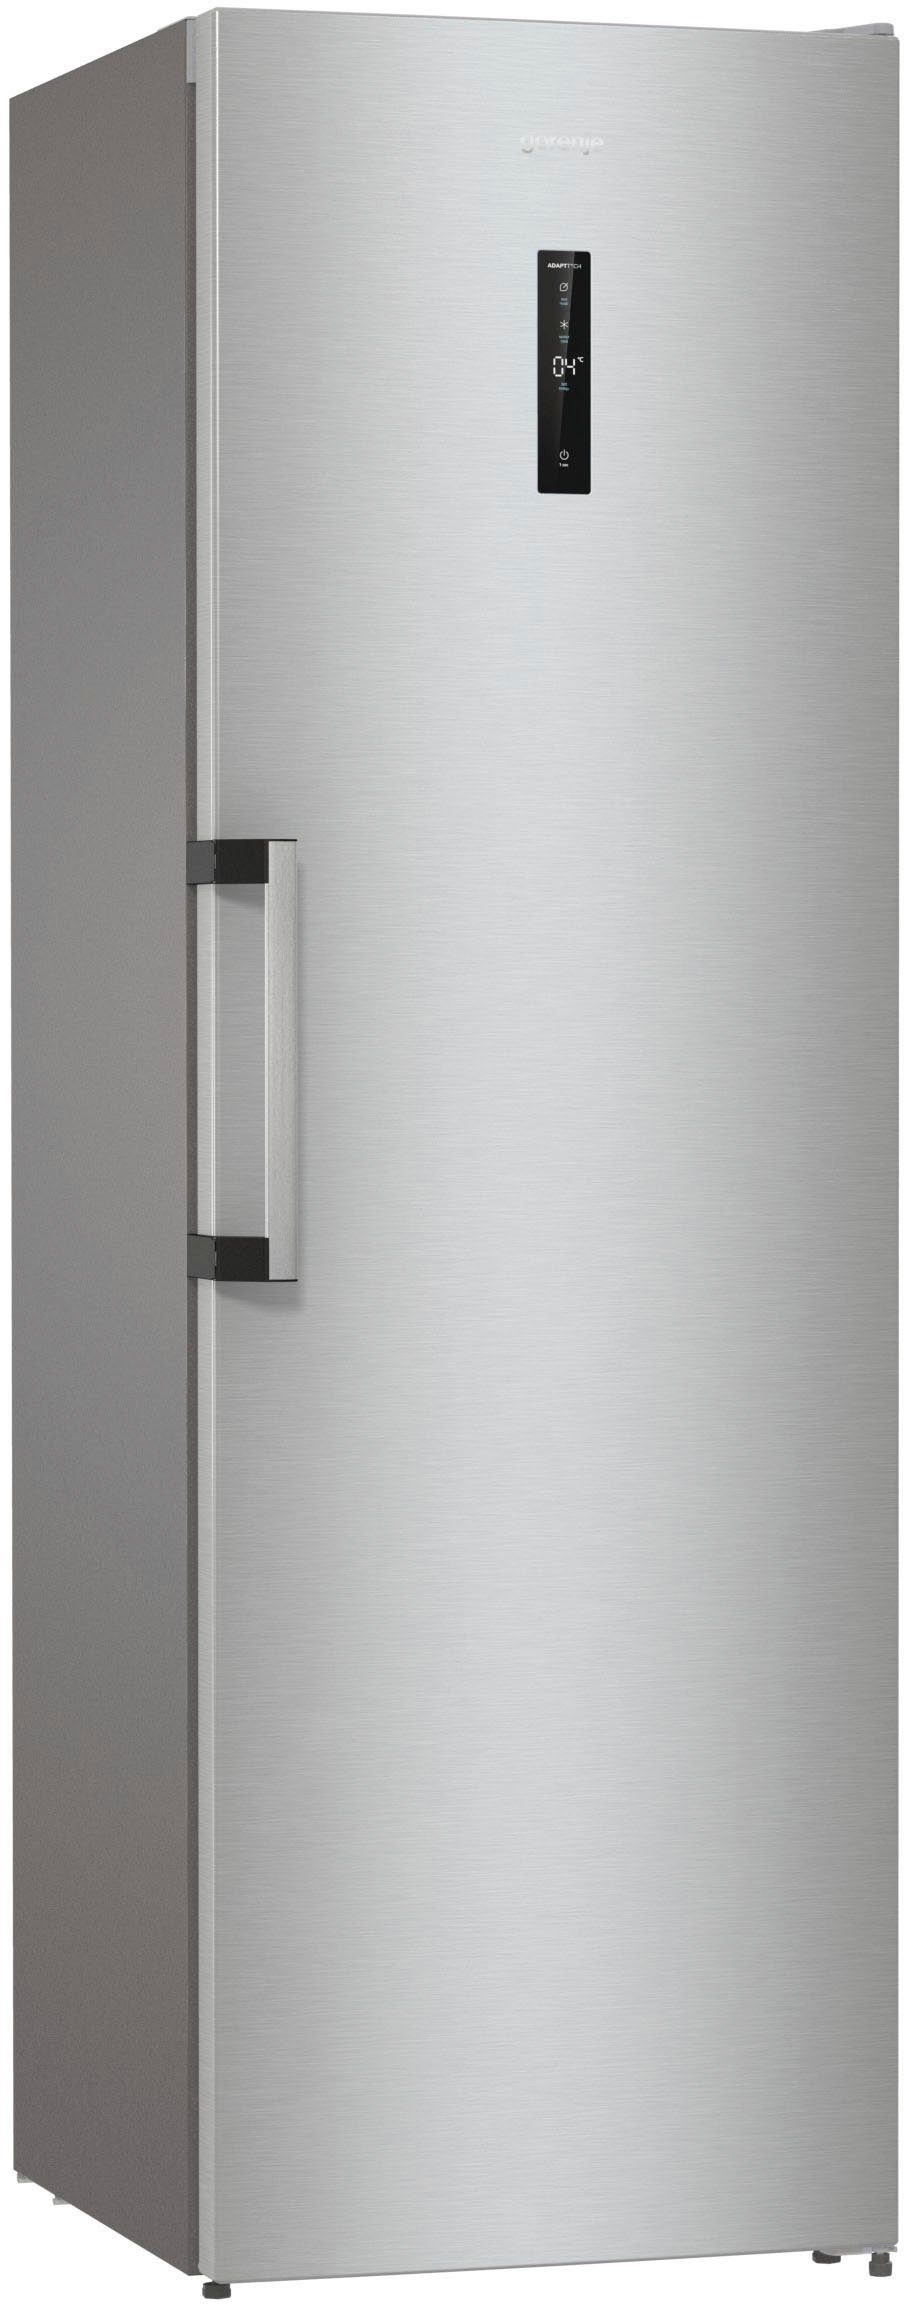 Silberne Gorenje Kühlschränke online kaufen | OTTO